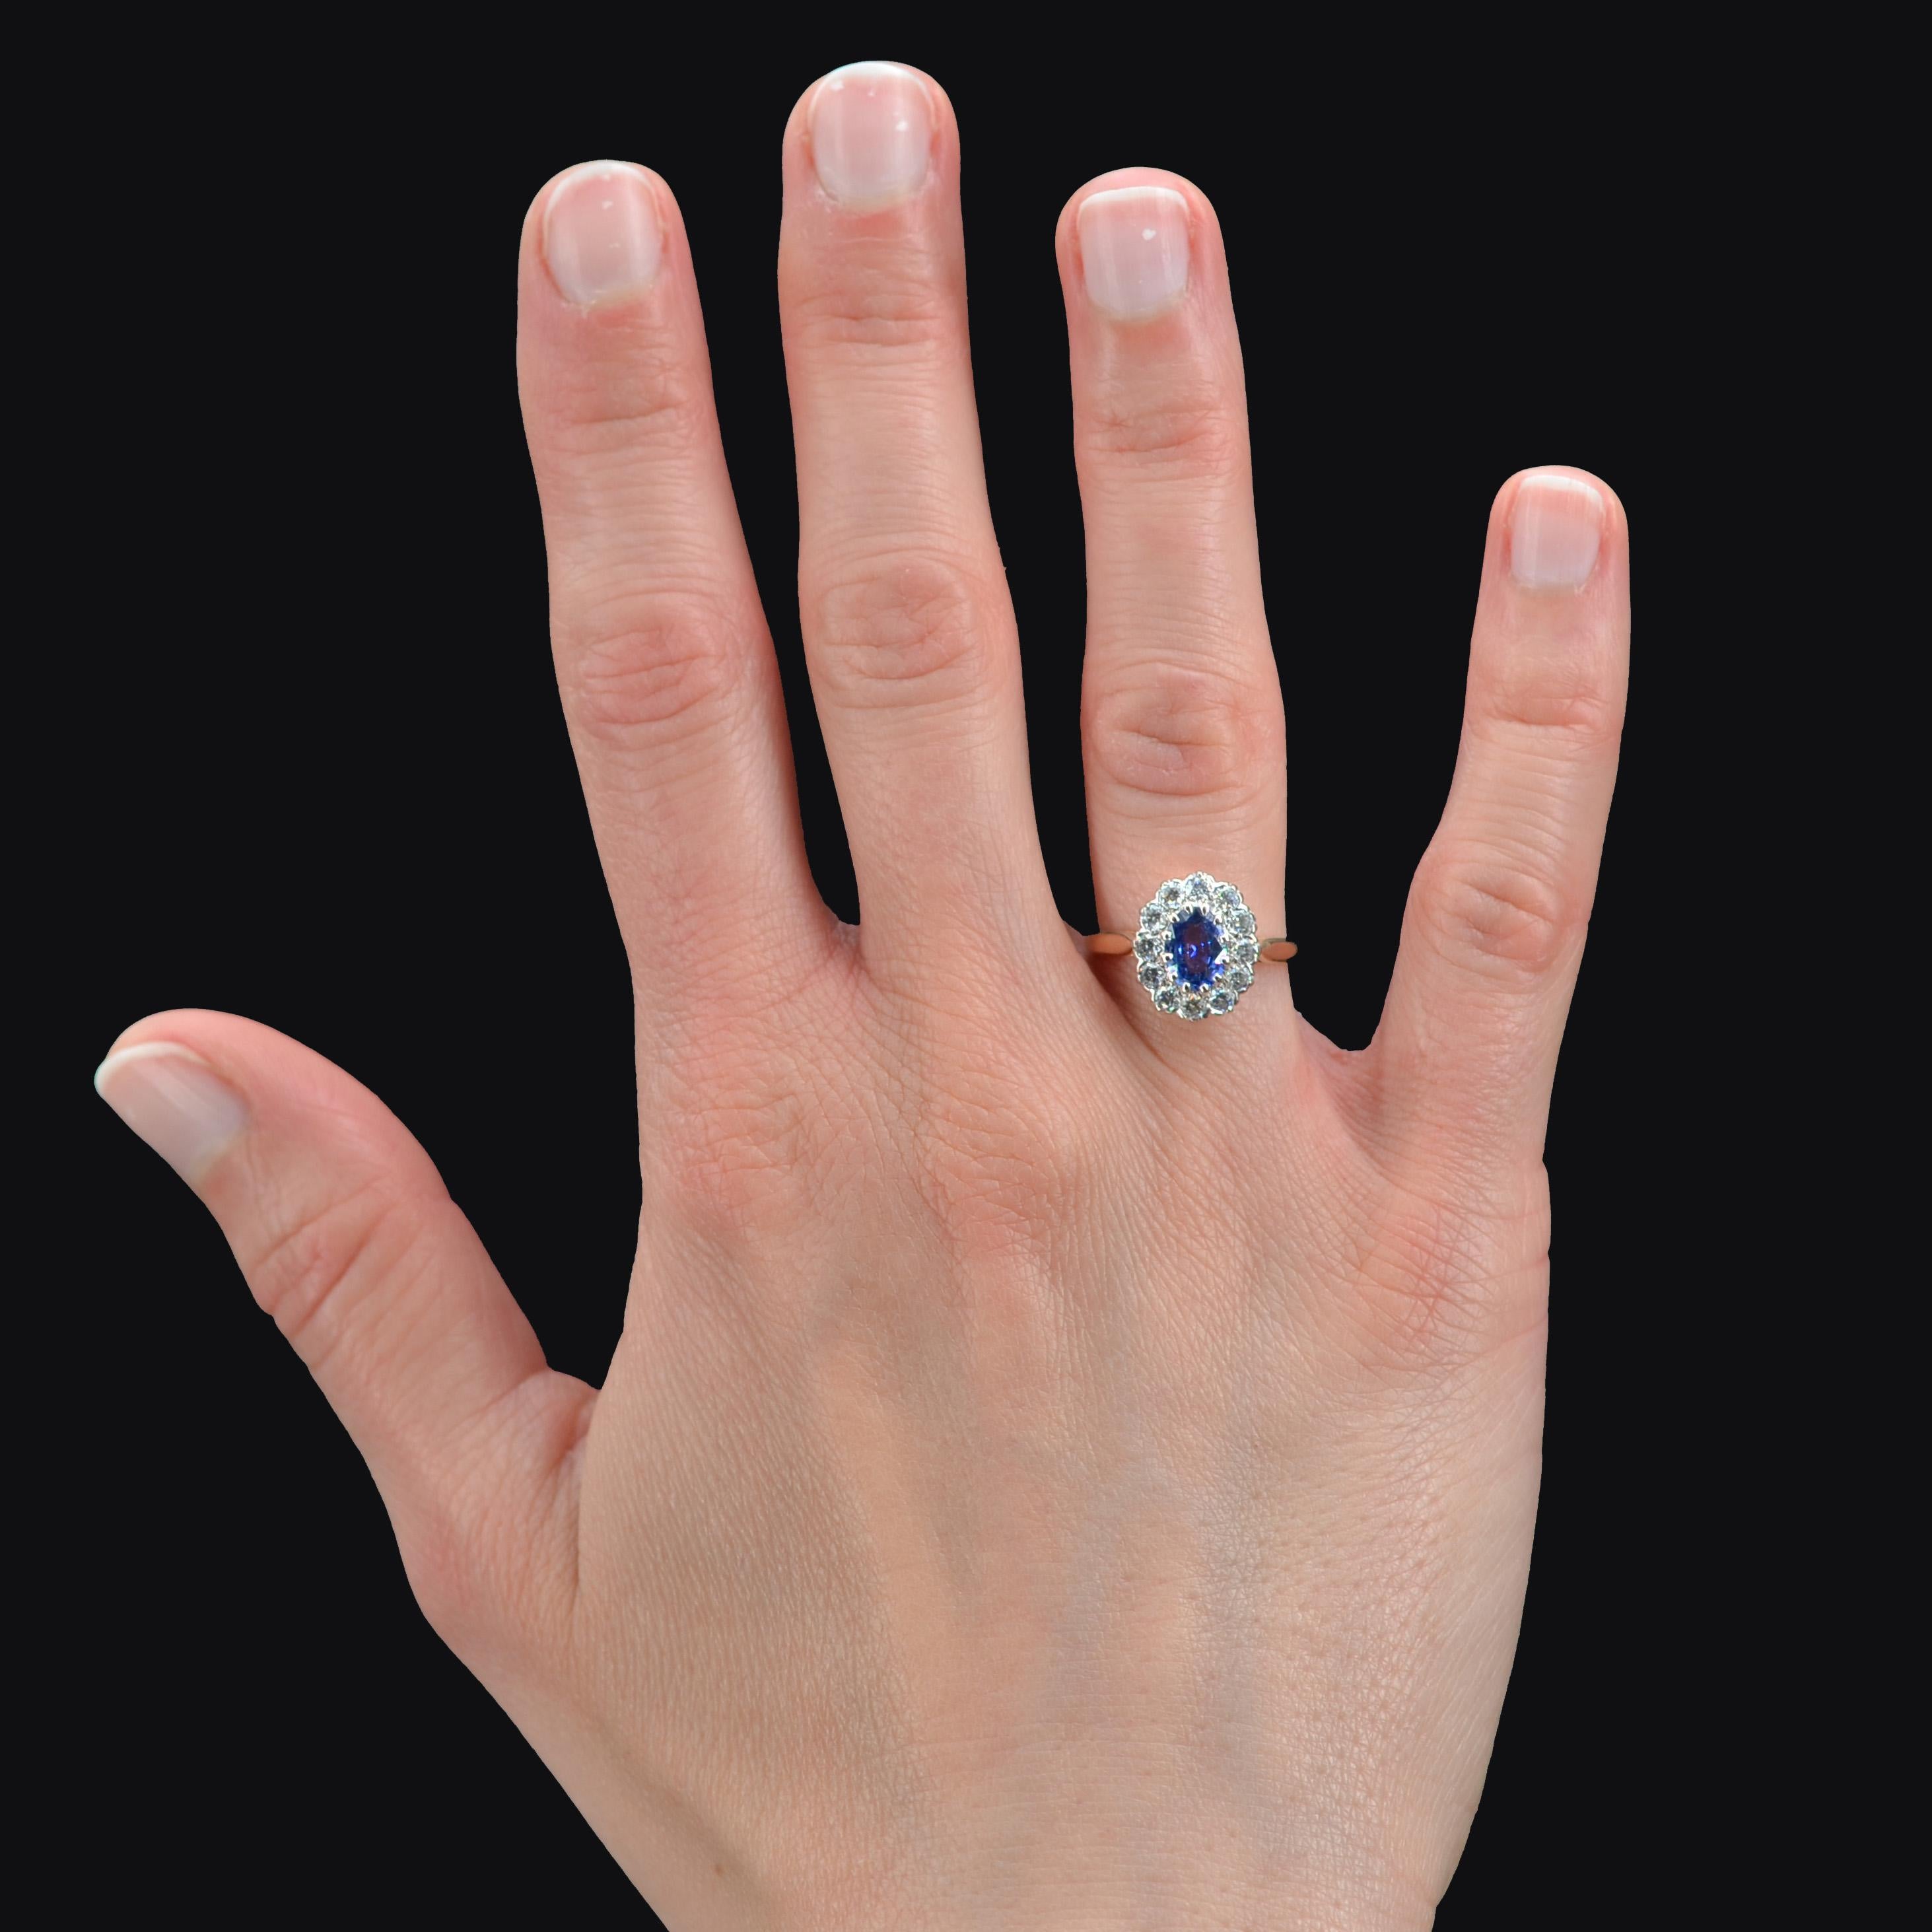 Bague en or jaune 18 carats.
Ravissante bague Pompadour, elle est ornée au centre d'un saphir bleu retenu par des griffes dans un entourage de diamants modernes taille brillant. L'anneau a 2 perles de rétrécissement qui peuvent être enlevées.
Poids